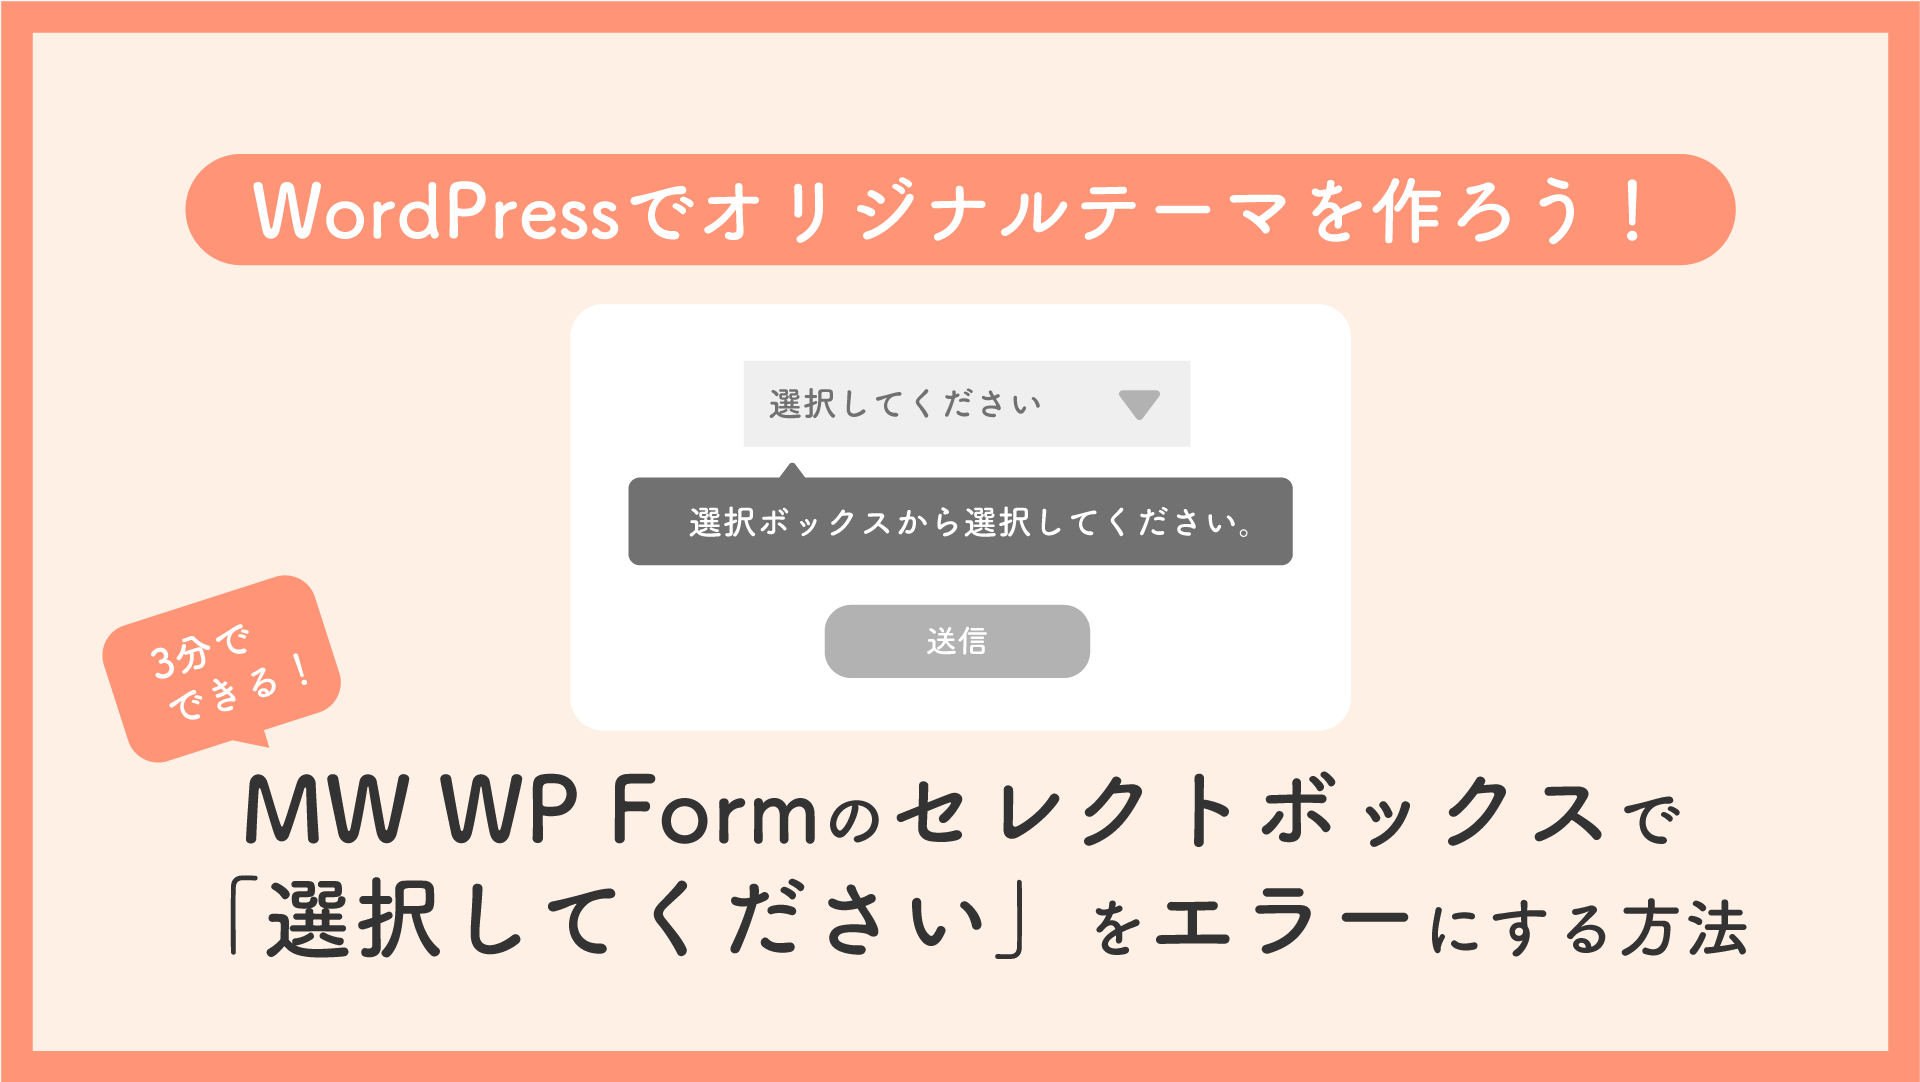 MW WP Formのセレクトボックスで「選択してください」をエラーにする方法